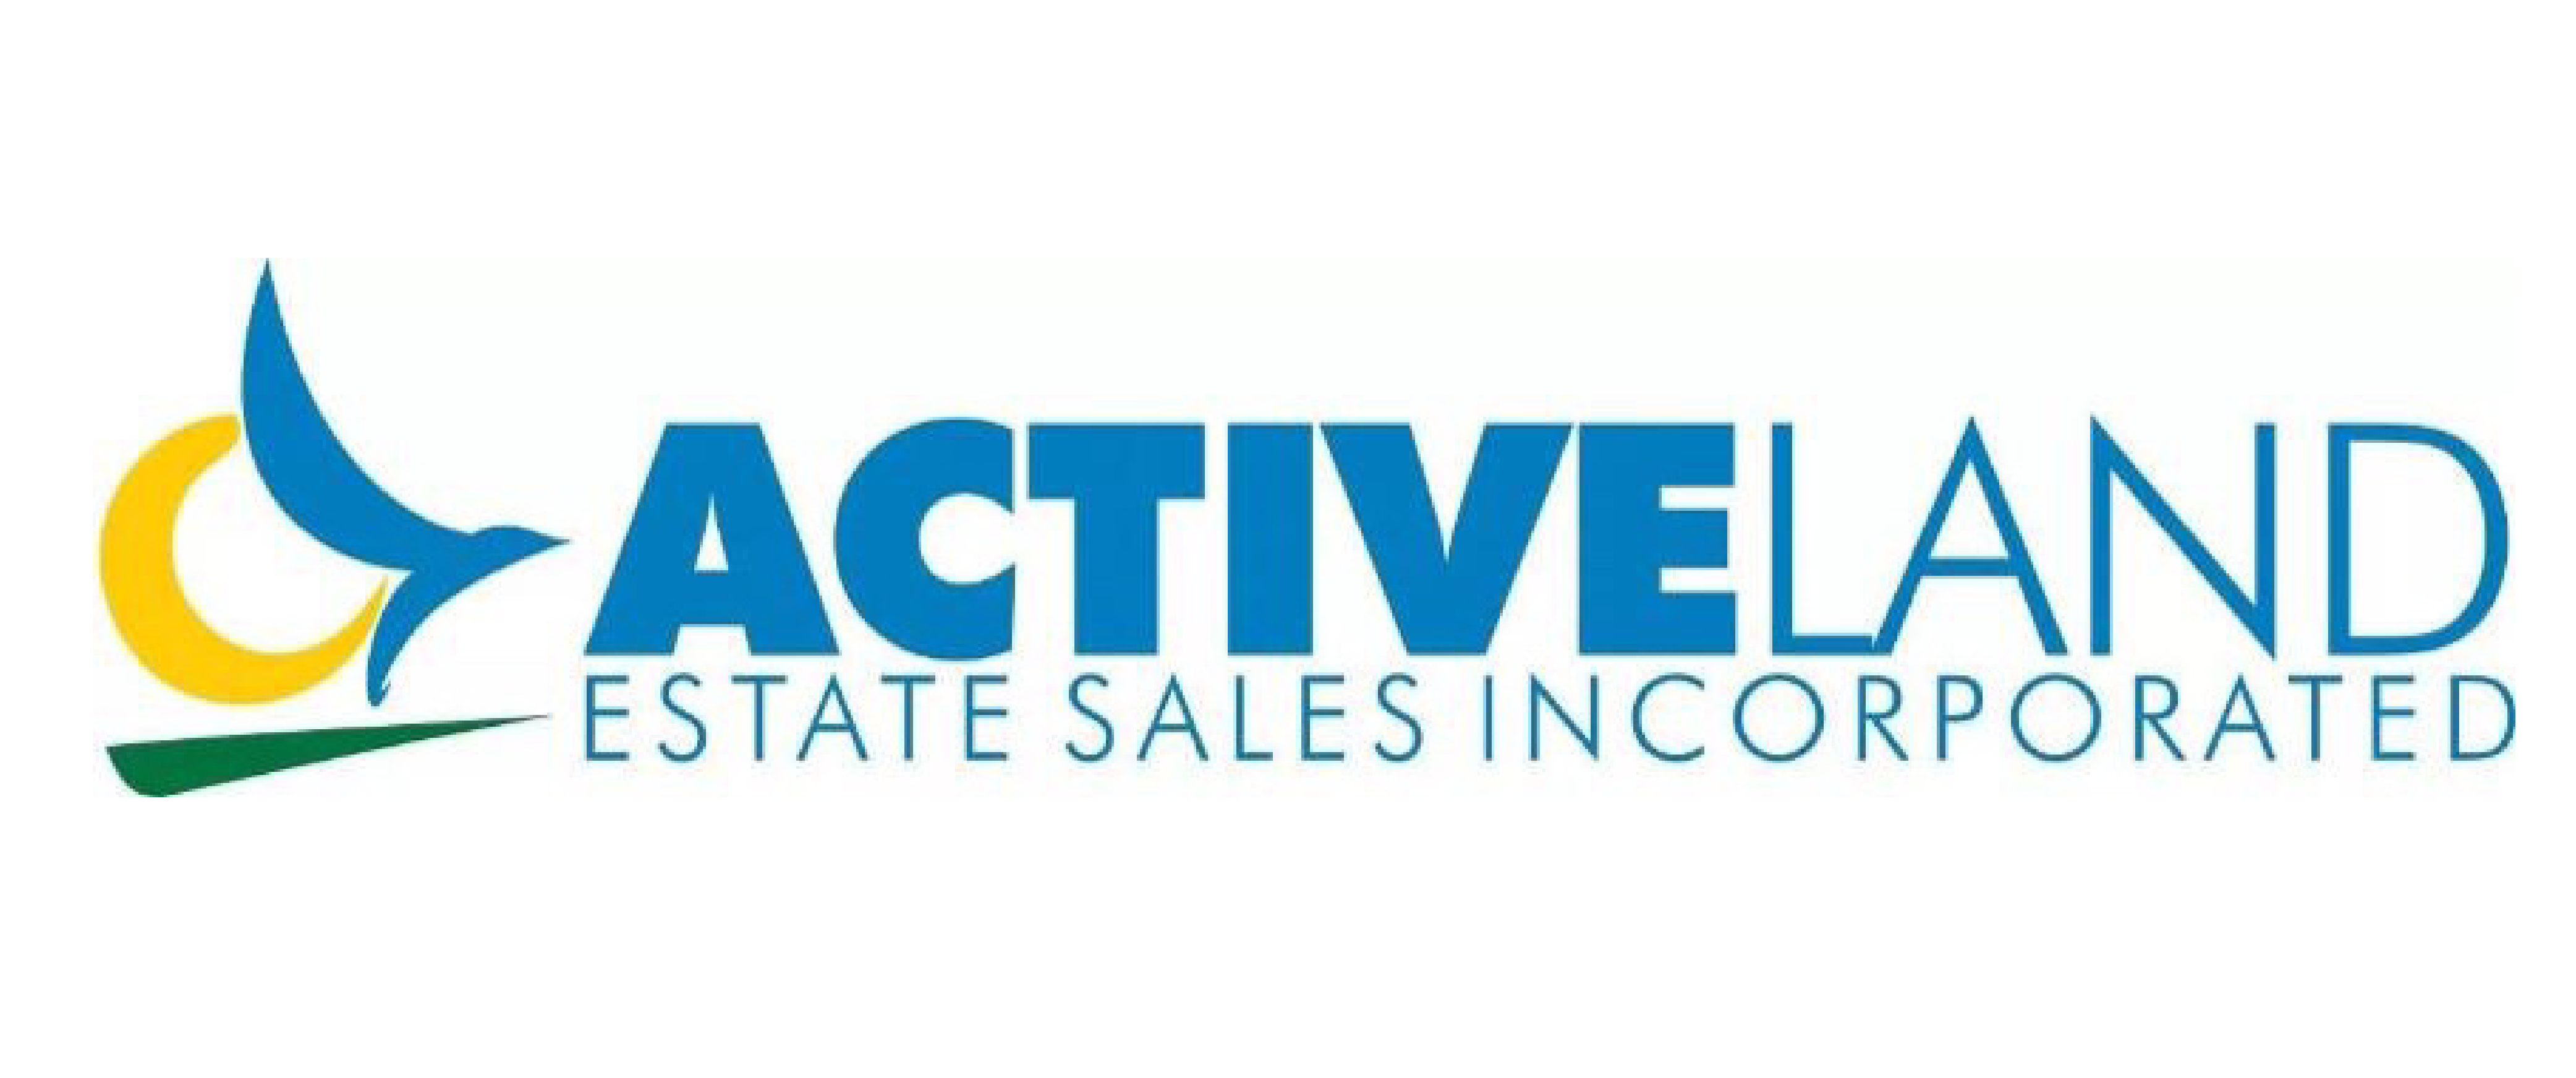 Active Land Estate Sales, Inc.